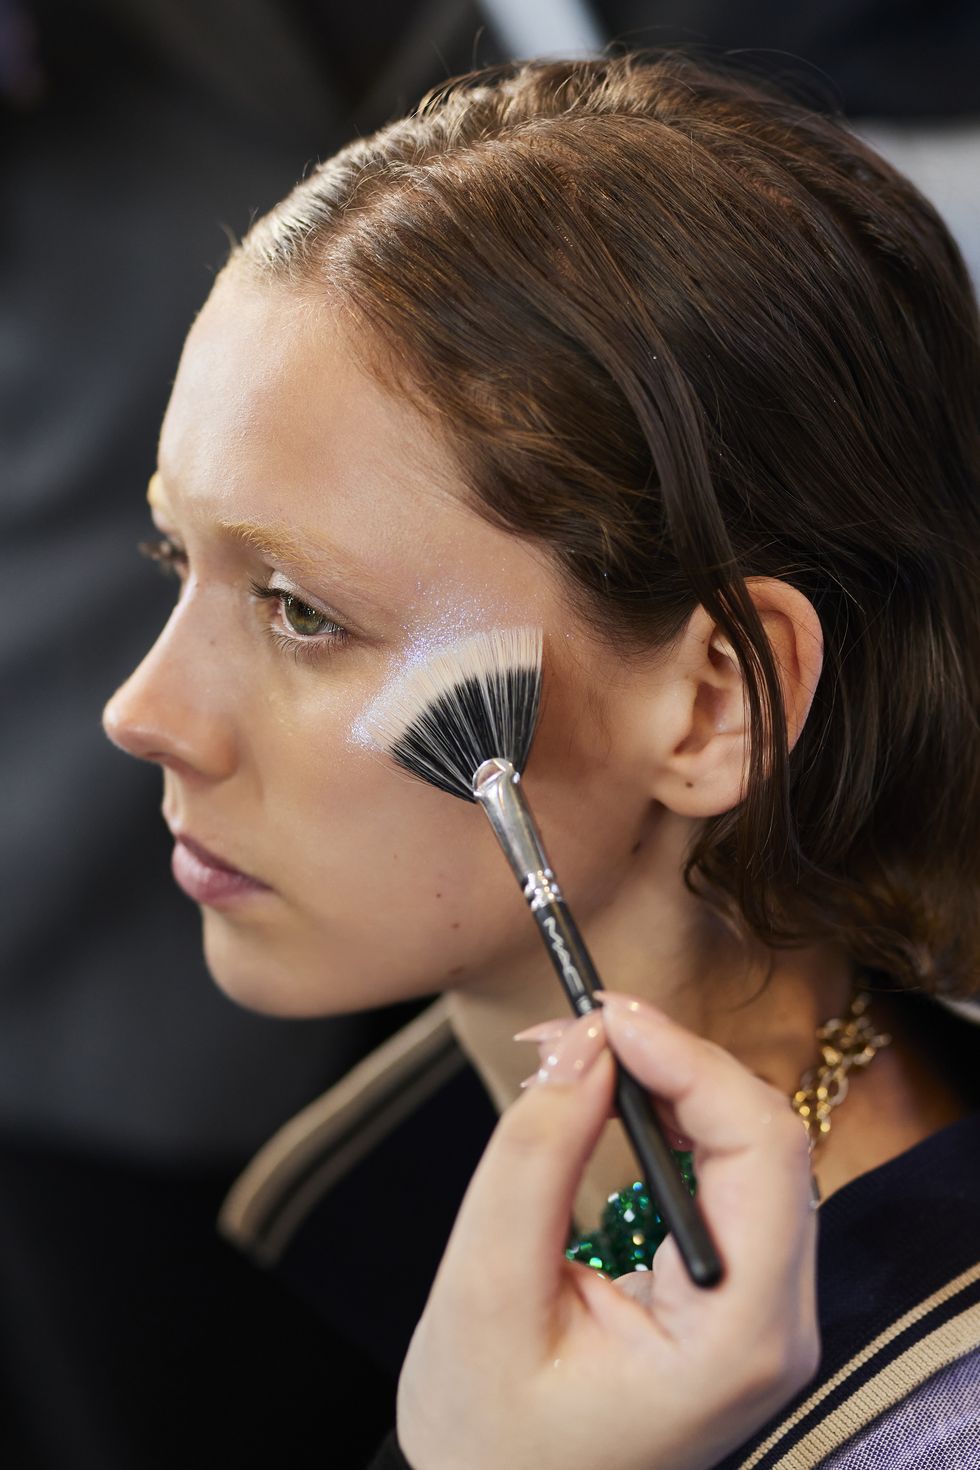 Tendenze make-up, il set di pennello più venduto è low cost